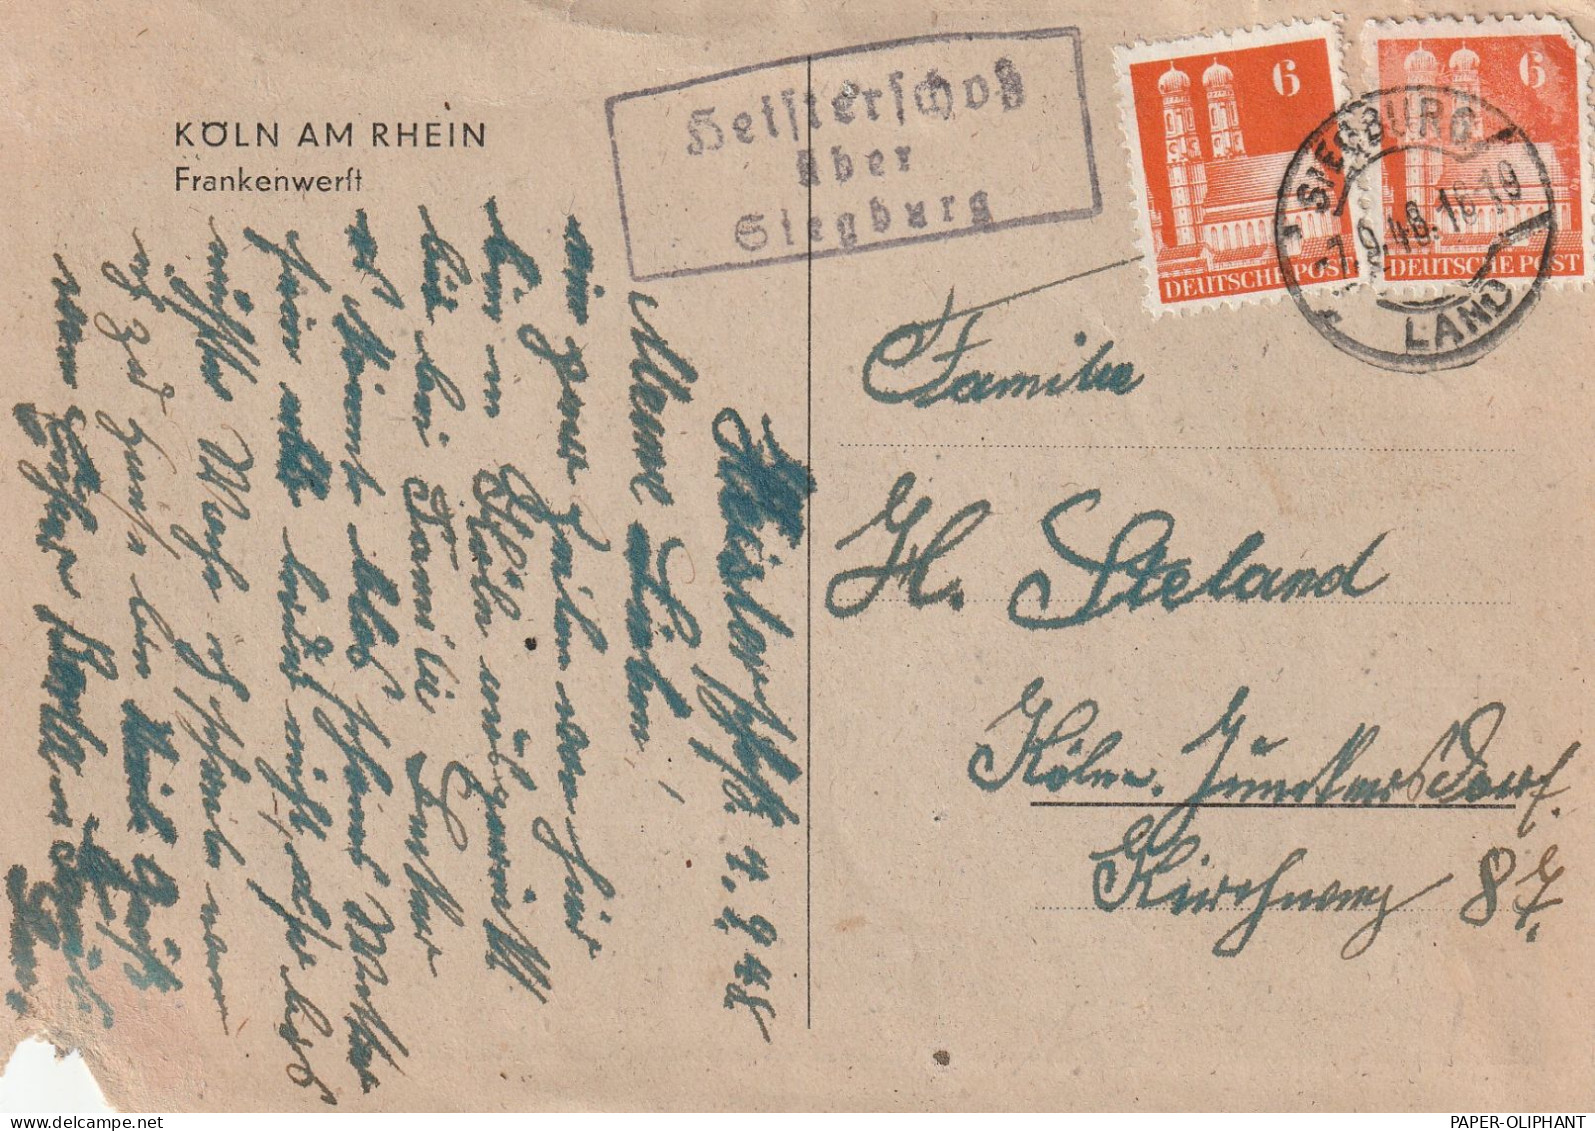 5202 HENNEF - HEISTERSCHOSS, Postgeschichte, Landpoststempel "Heisterschoß über Siegburg", 1946 - Hennef